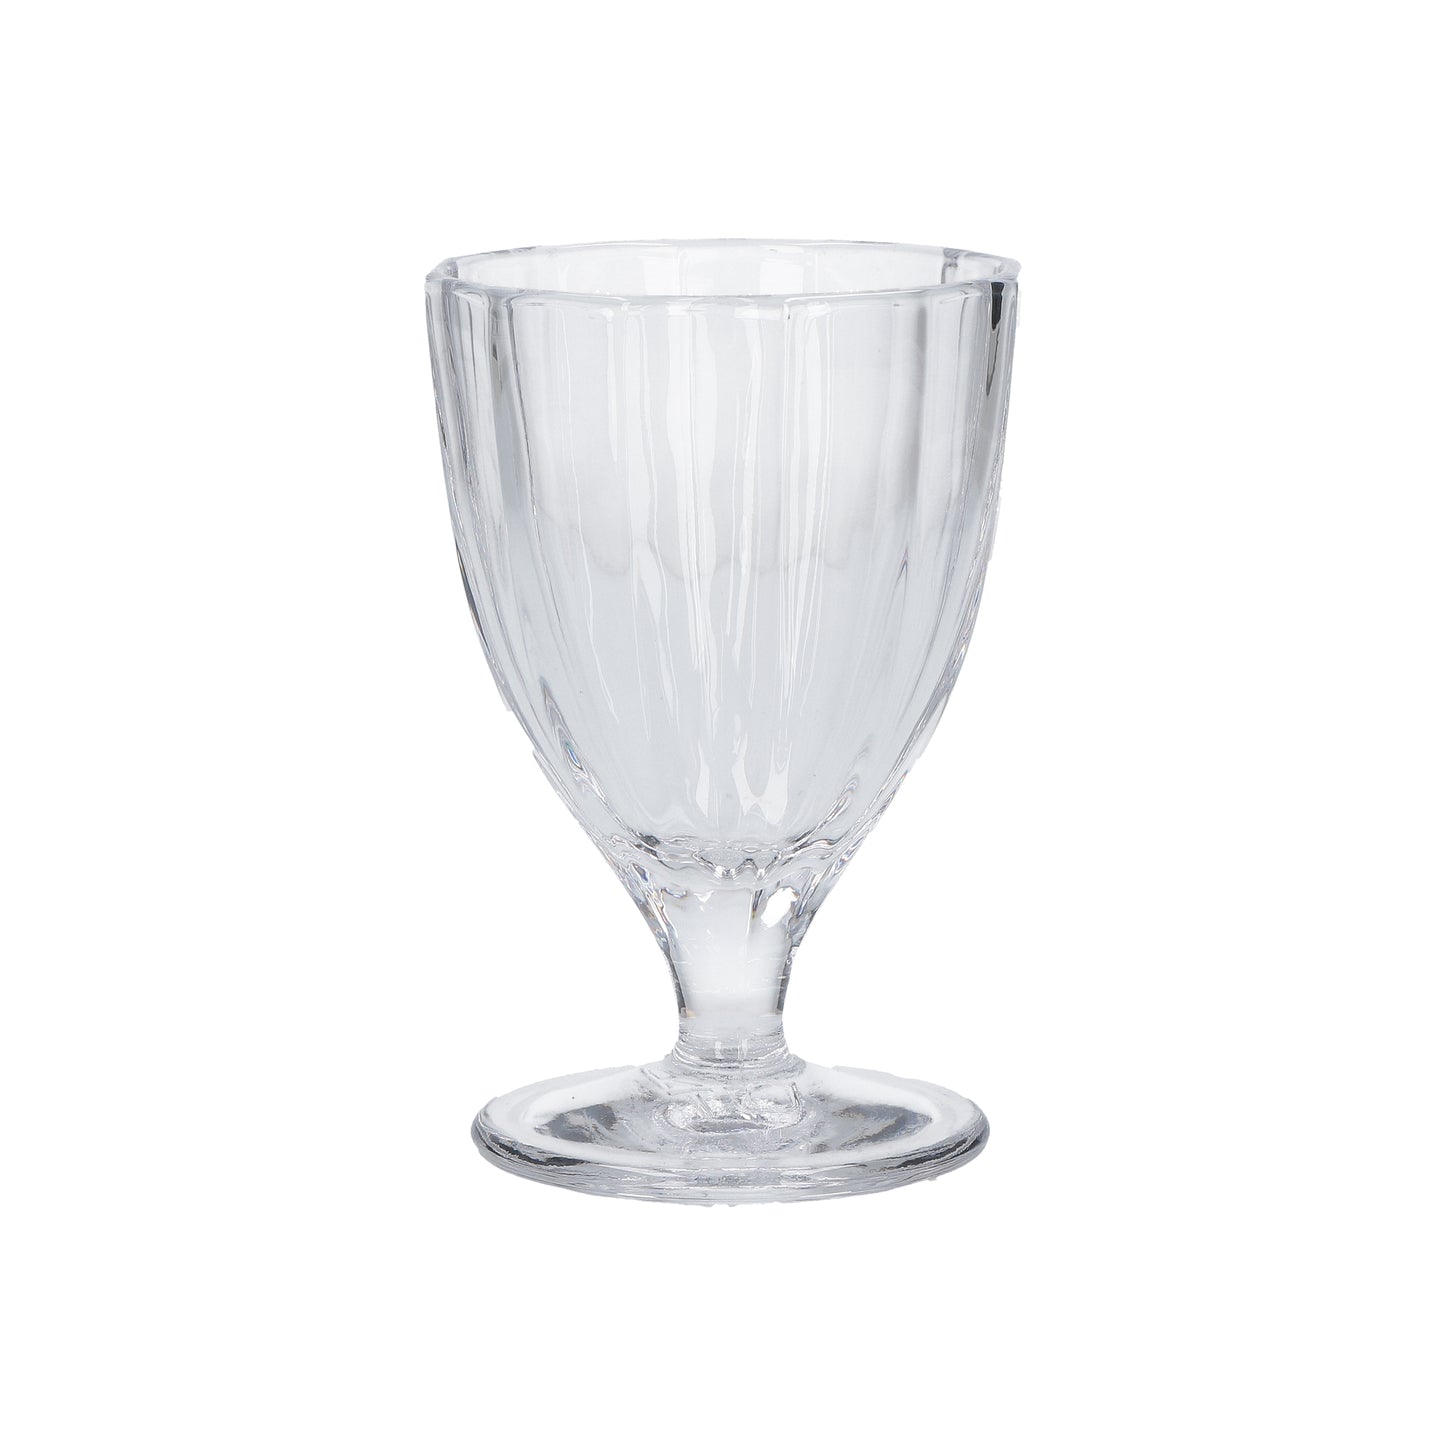 Confezione 6 calici in vetro trasparente cc 300 - Ø 8,5 - h 13 cm. Lavabili in lavastoviglie